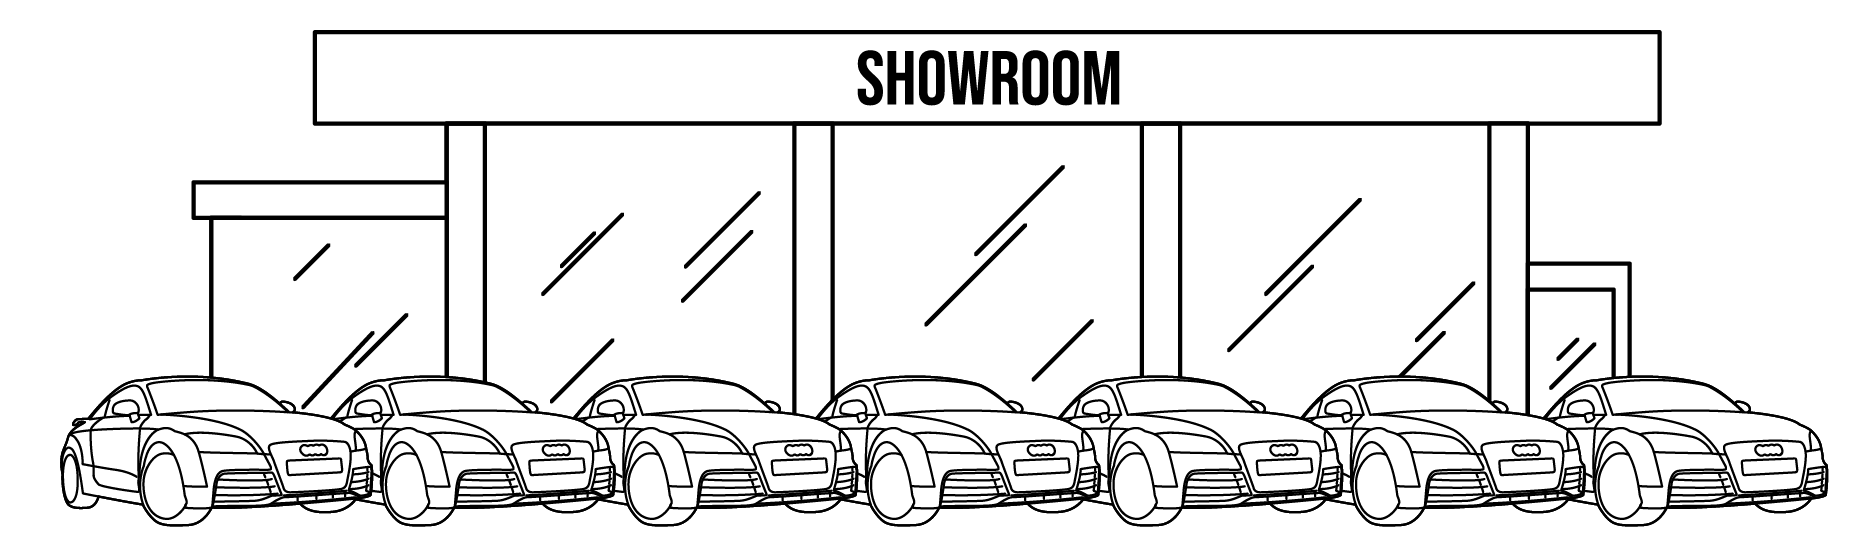 Illustration of a car showroom/dealership